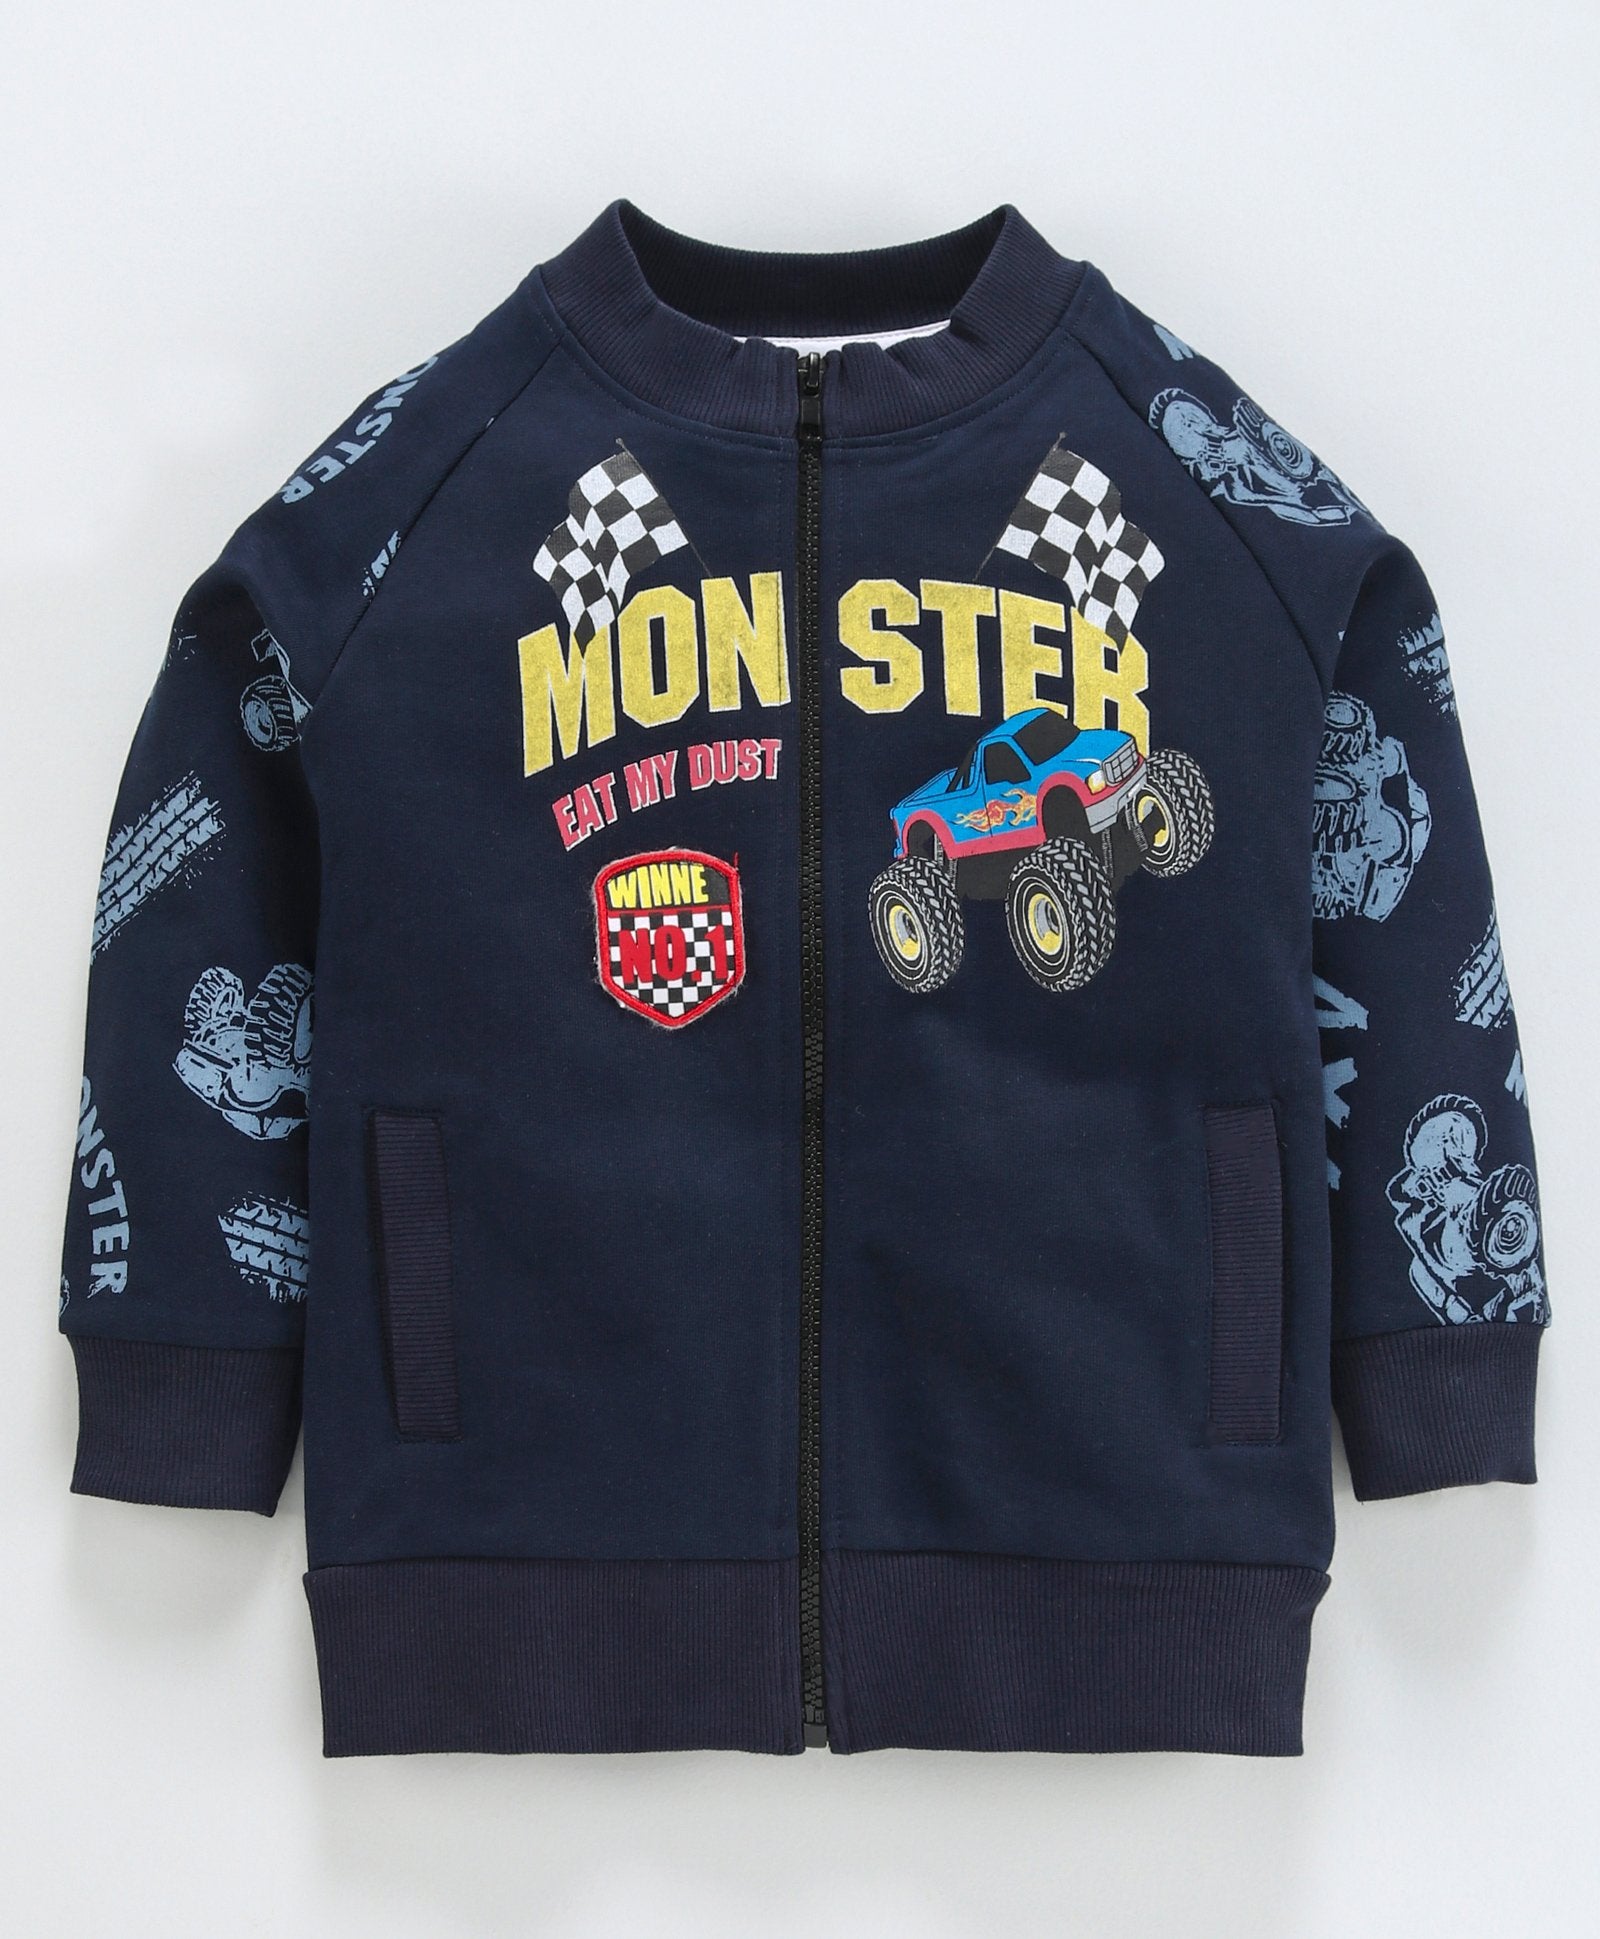 Monster Print Full Sleeve Jacket - Navy Blue